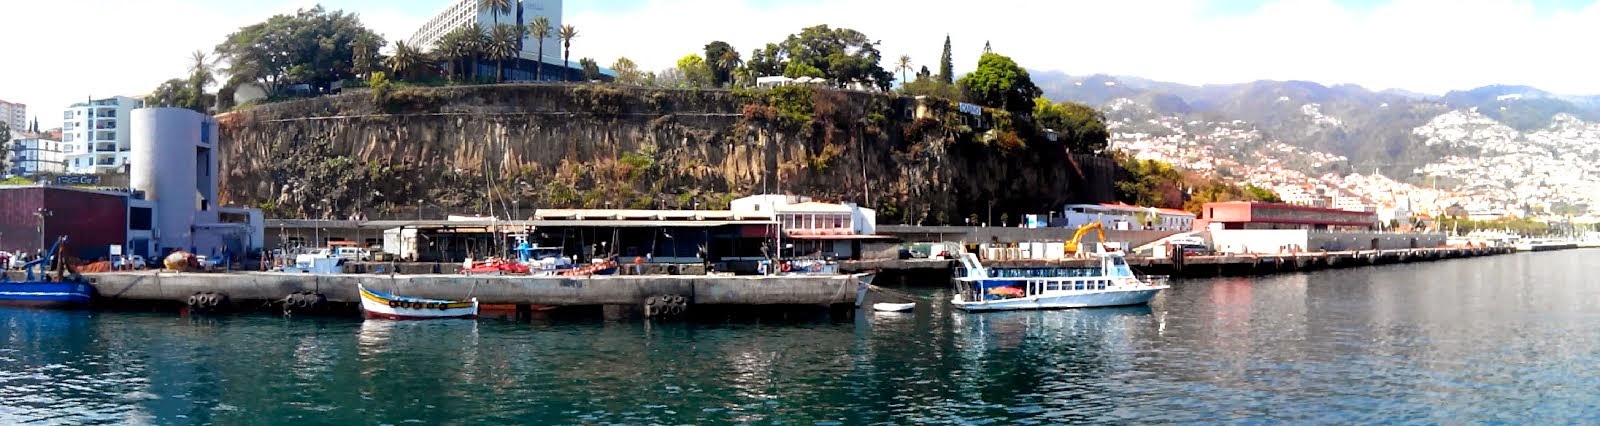 Cais Norte do Funchal